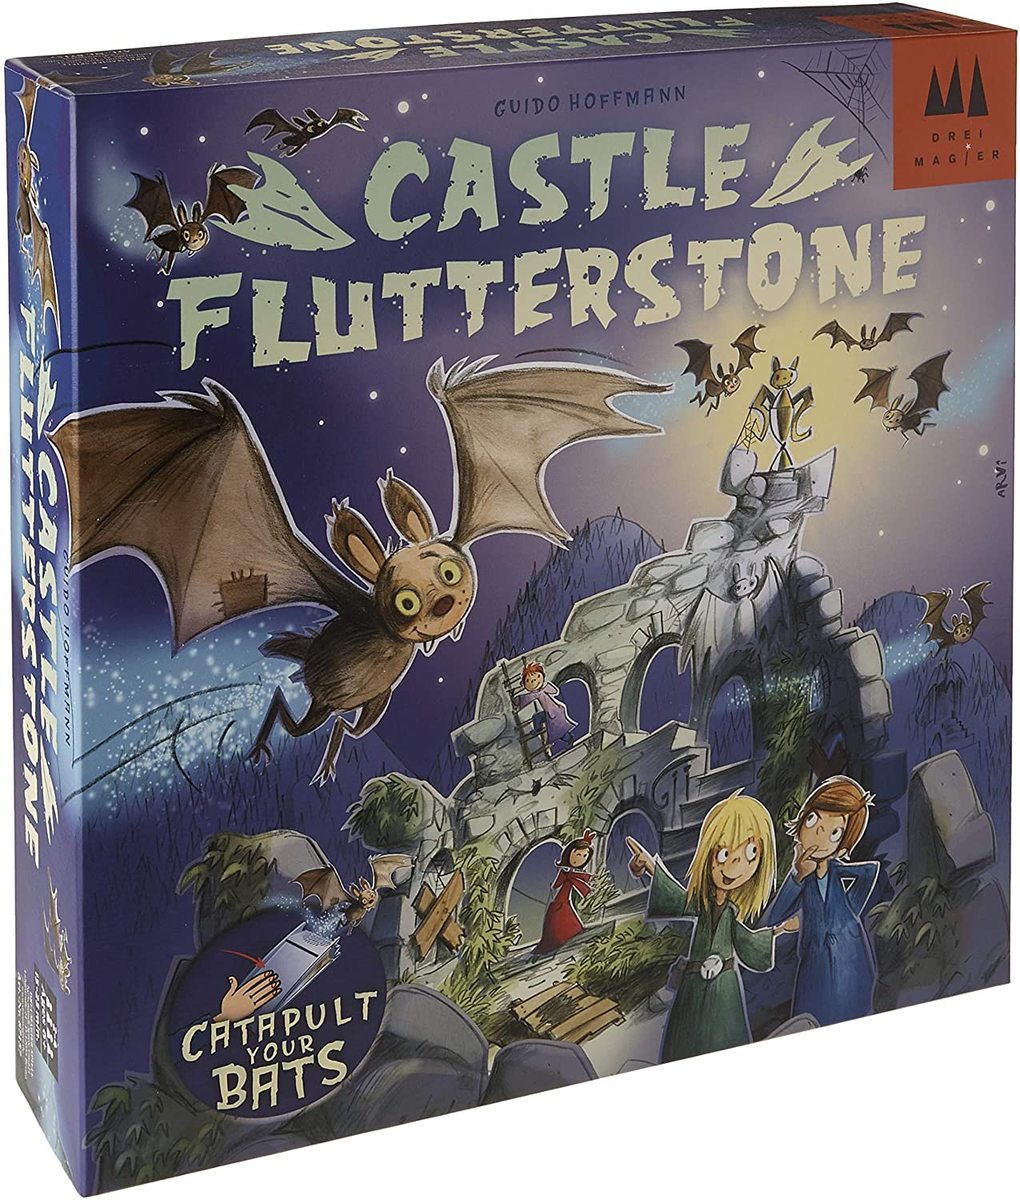 Castle Flutterstone